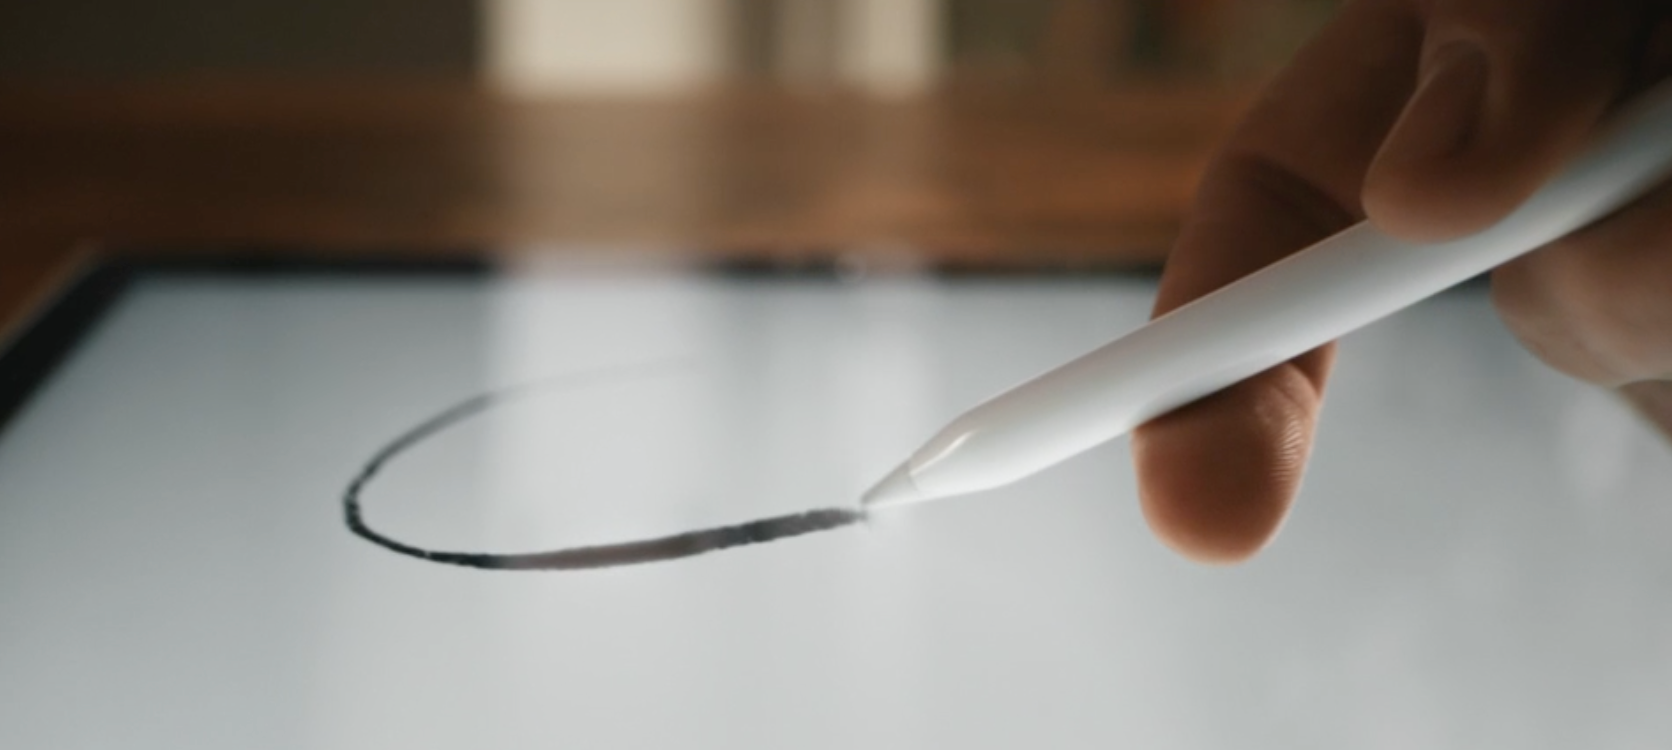 Apple hevder naturligvis at deres penn - unnskyld, blyant - er langt bedre enn konkurrenters penner.